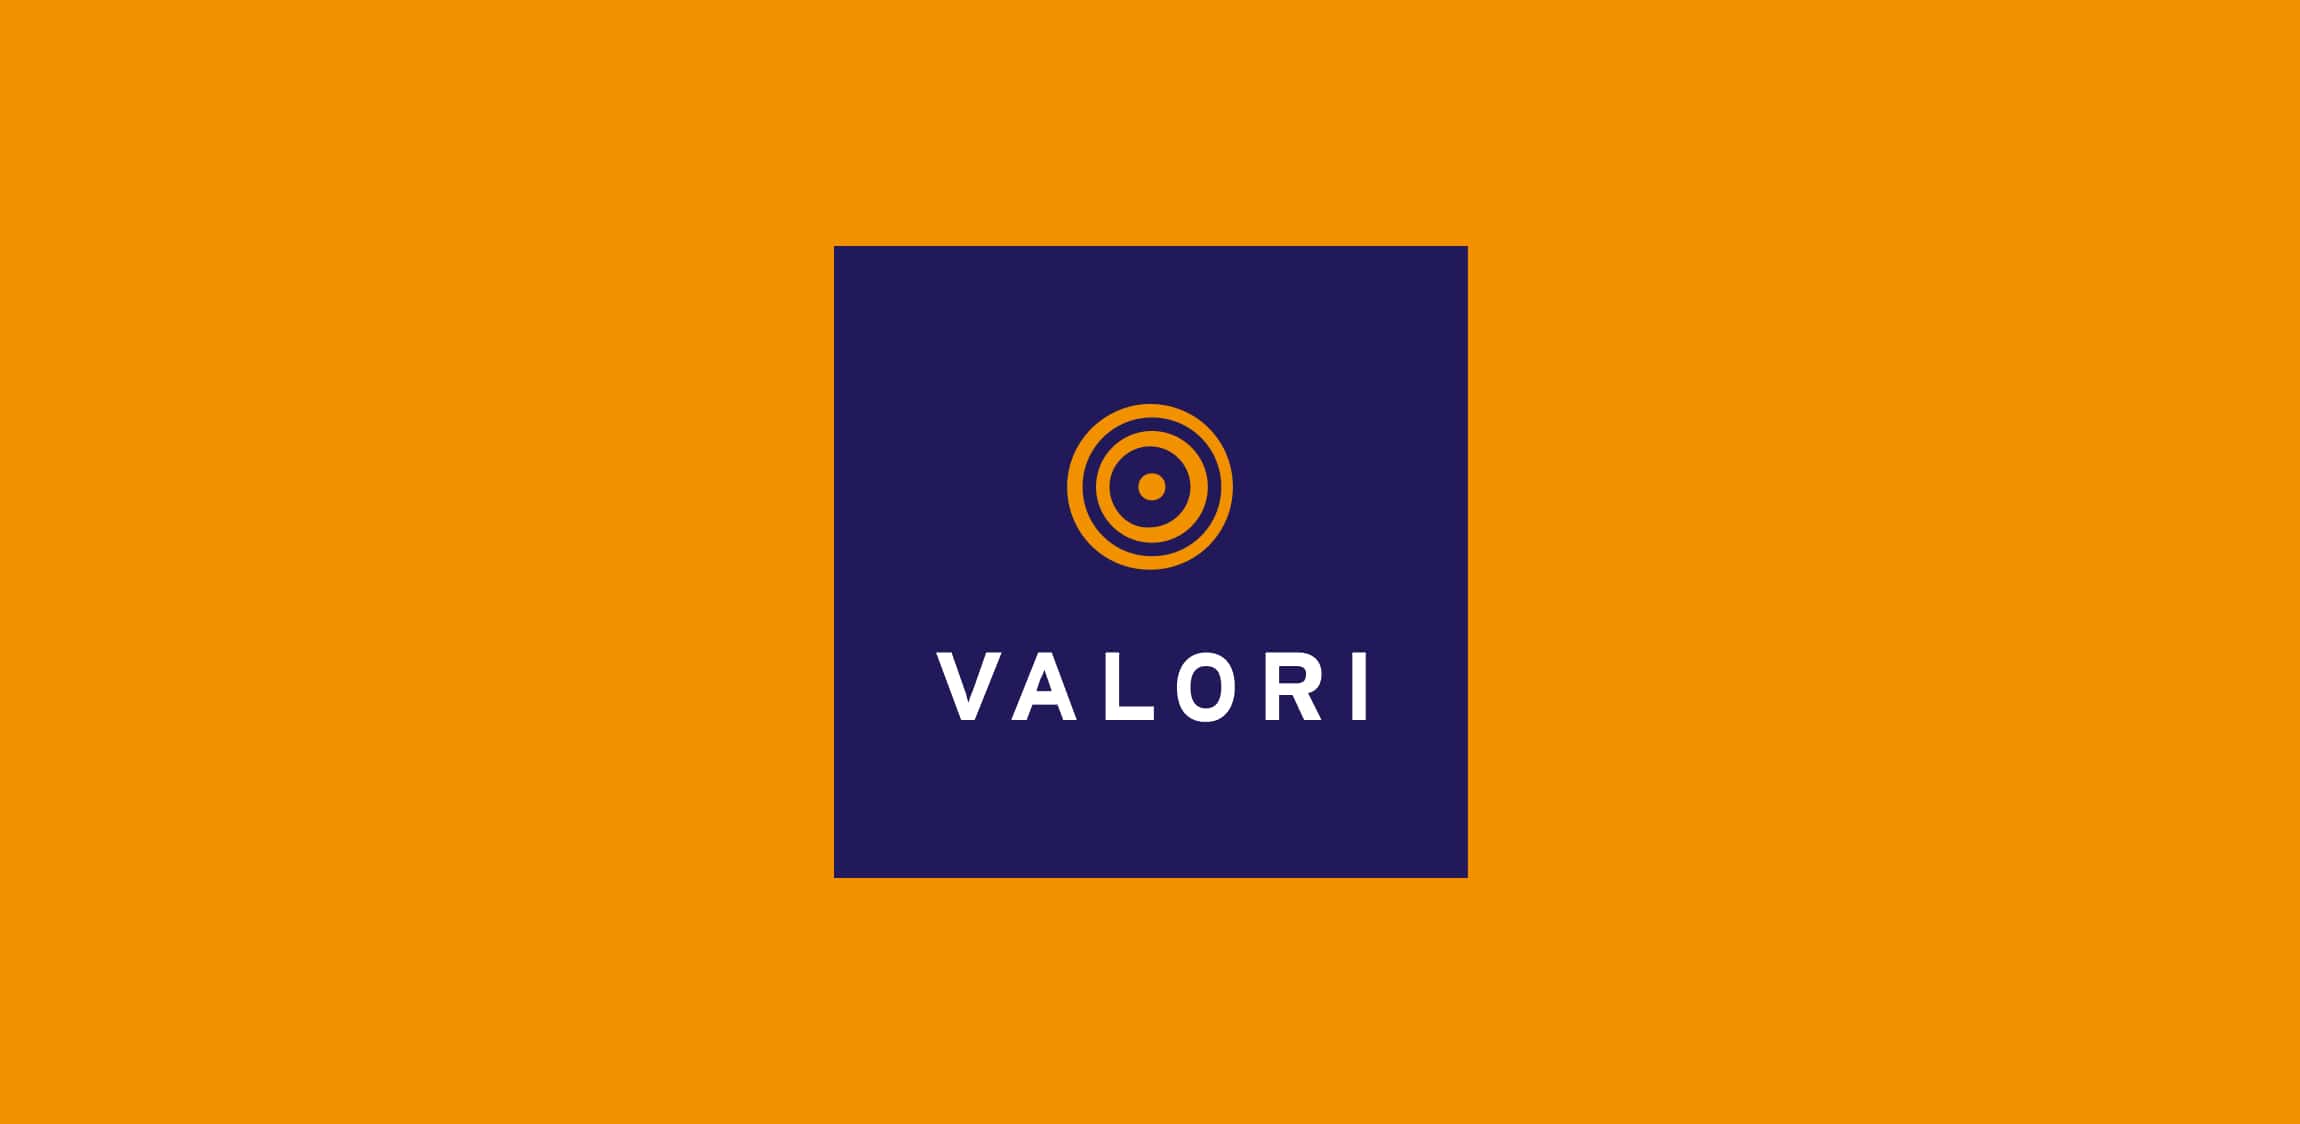 Het logo van valori op een oranje achtergrond